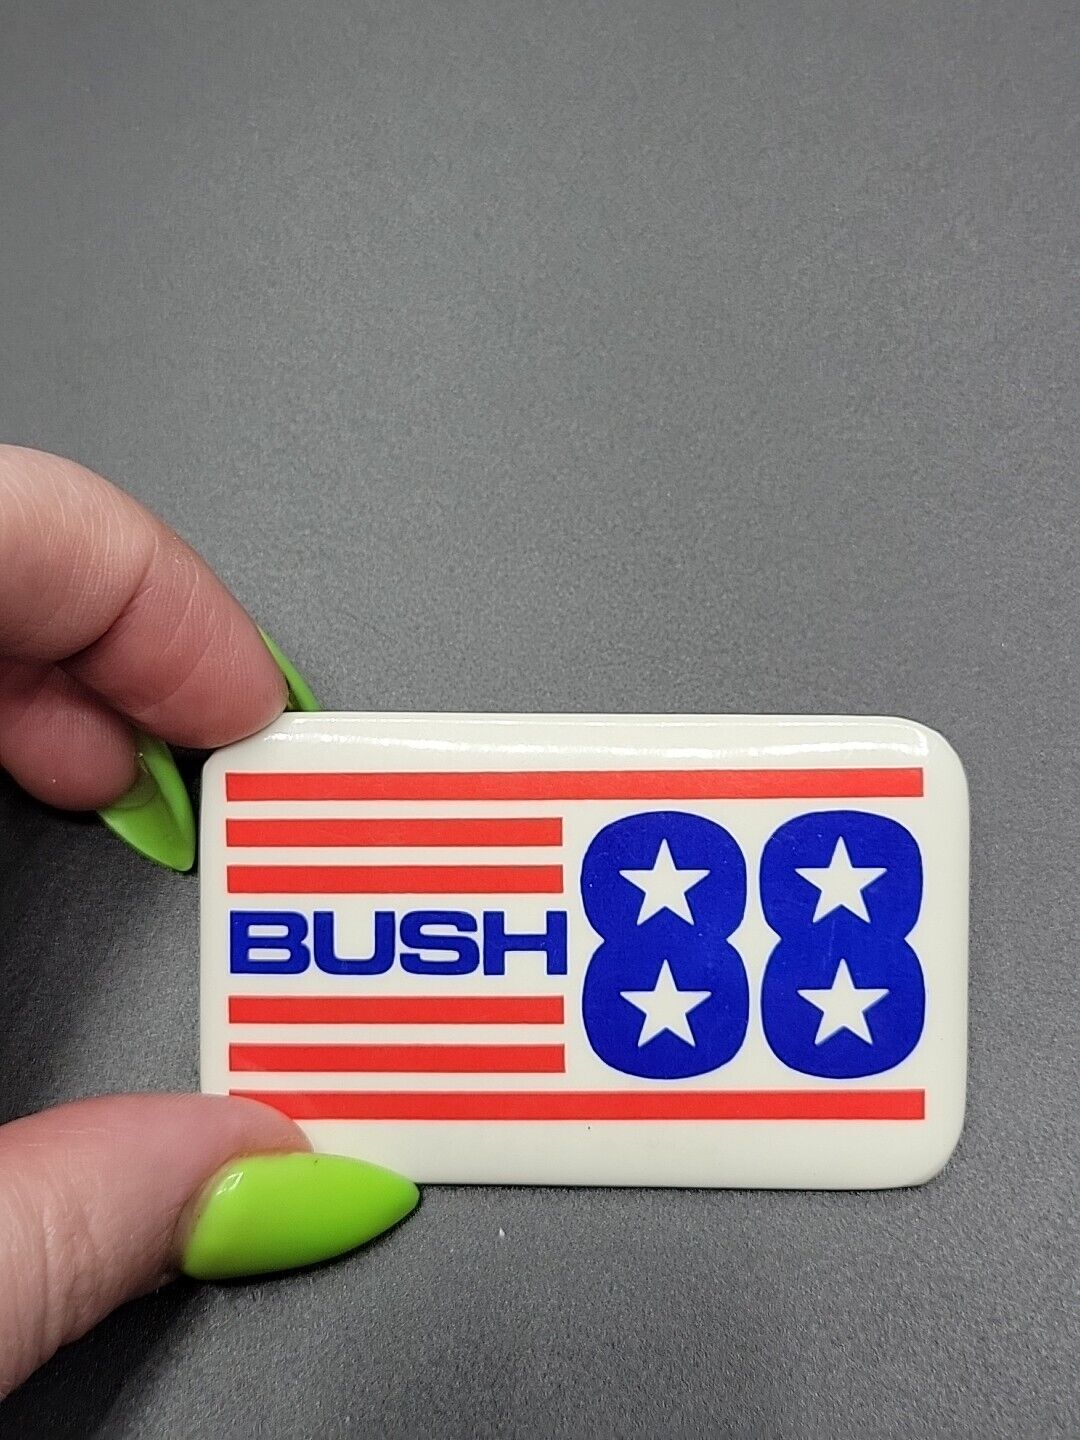 George Bush 1988 Political Campaign Button Pin Rectangle Vintage 